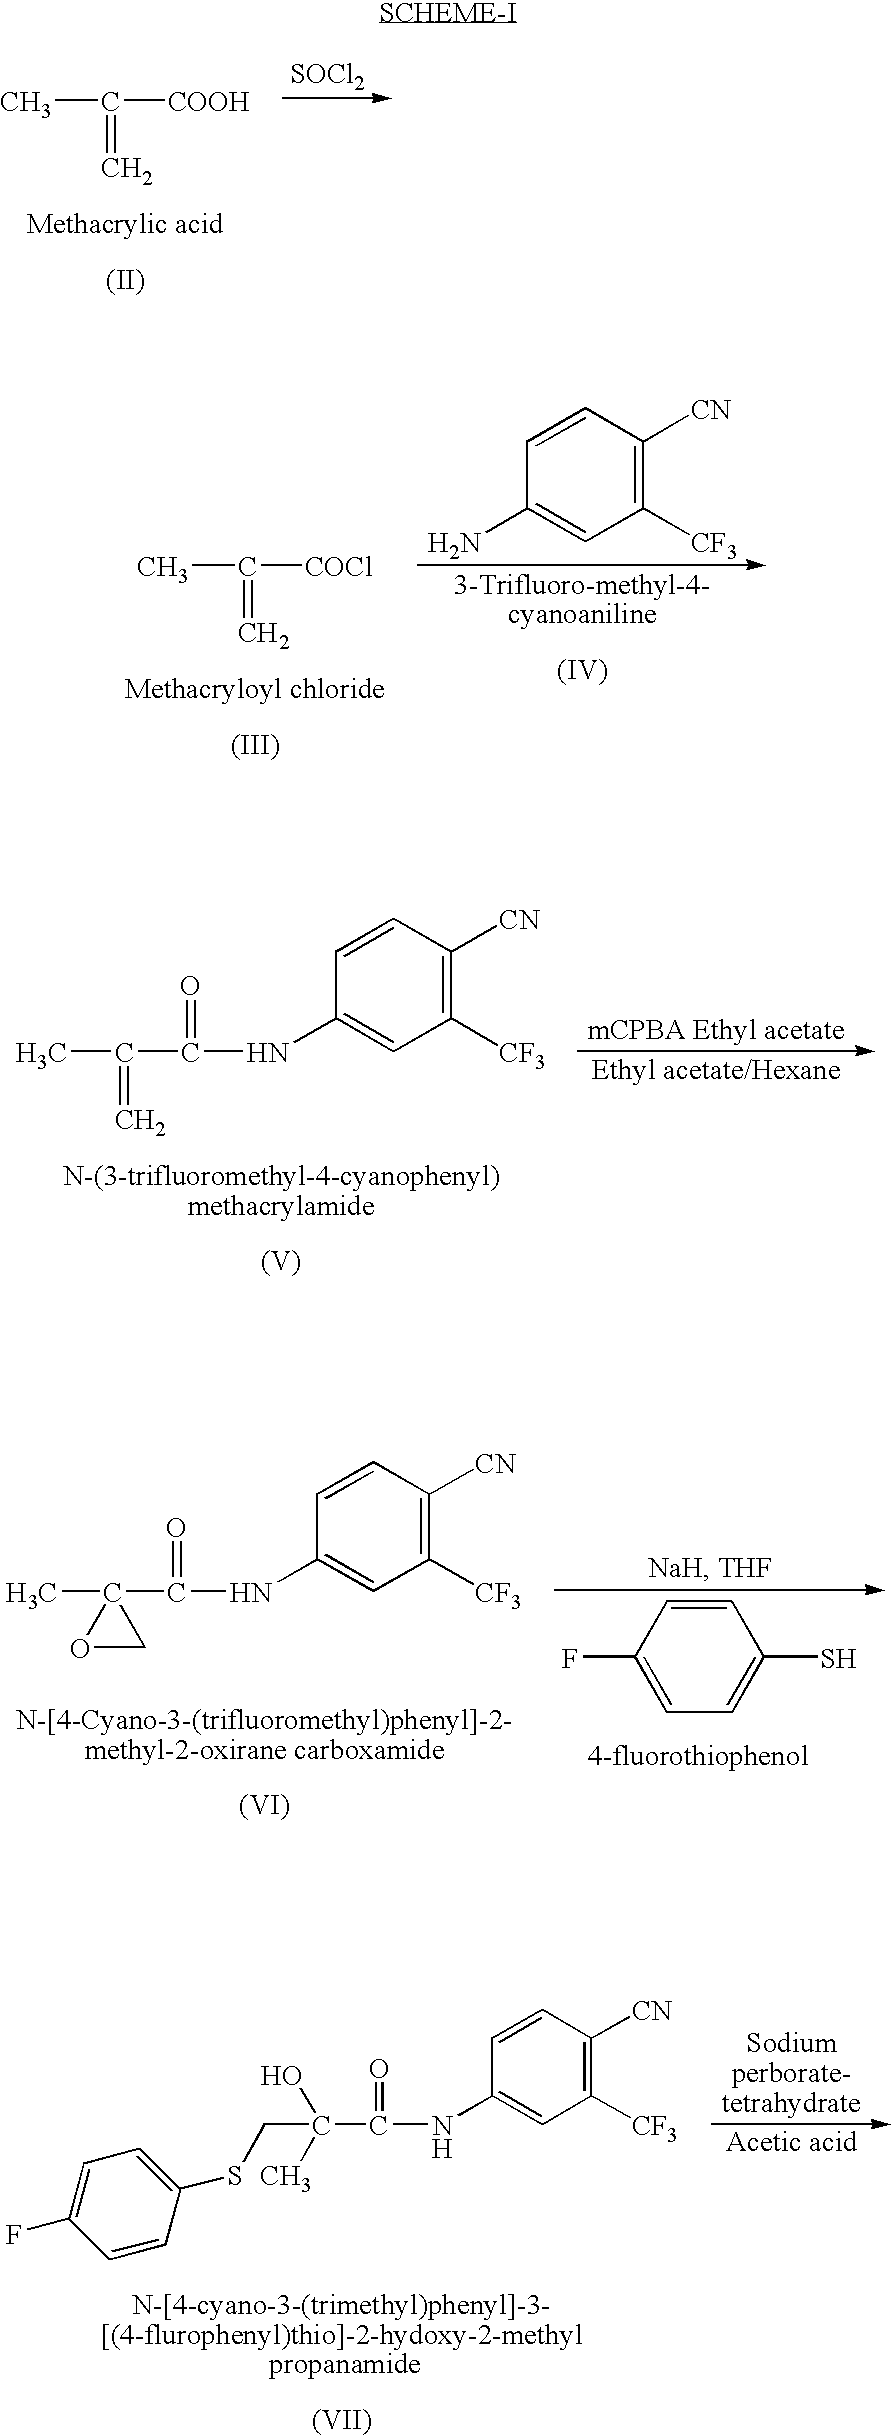 Novel Process for Preparation of Bicalutamide